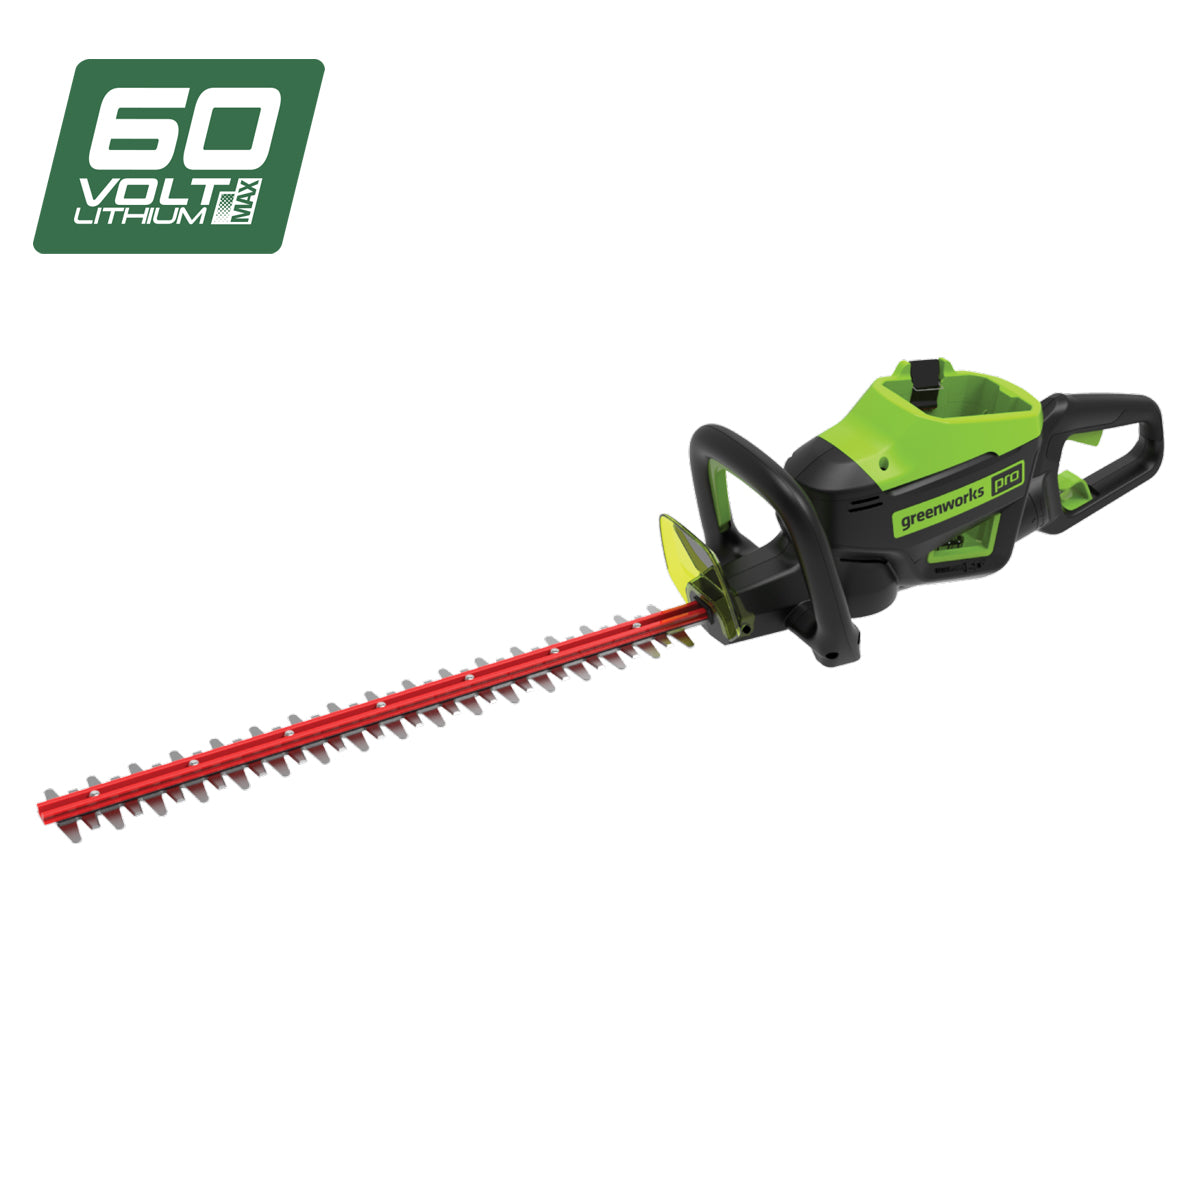 Greenworks 60V Pro Brushless Hedge Trimmer (26")